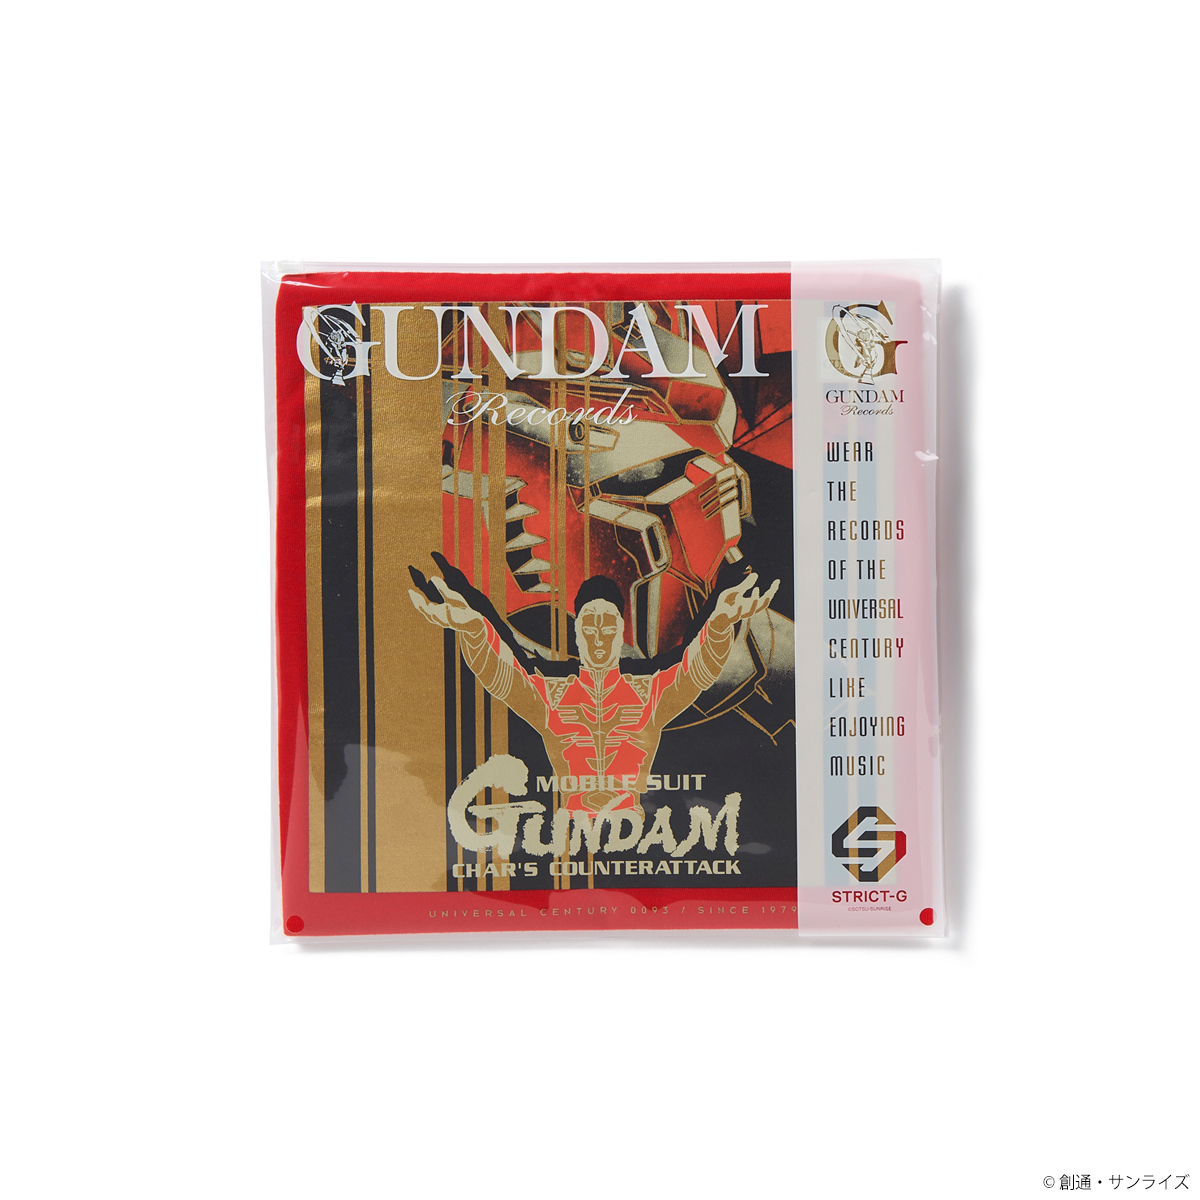 ガンダムの記憶（レコード）を着るTシャツシリーズ GUNDAM RECORDSより『逆襲のシャア』他、全3タイトル発売